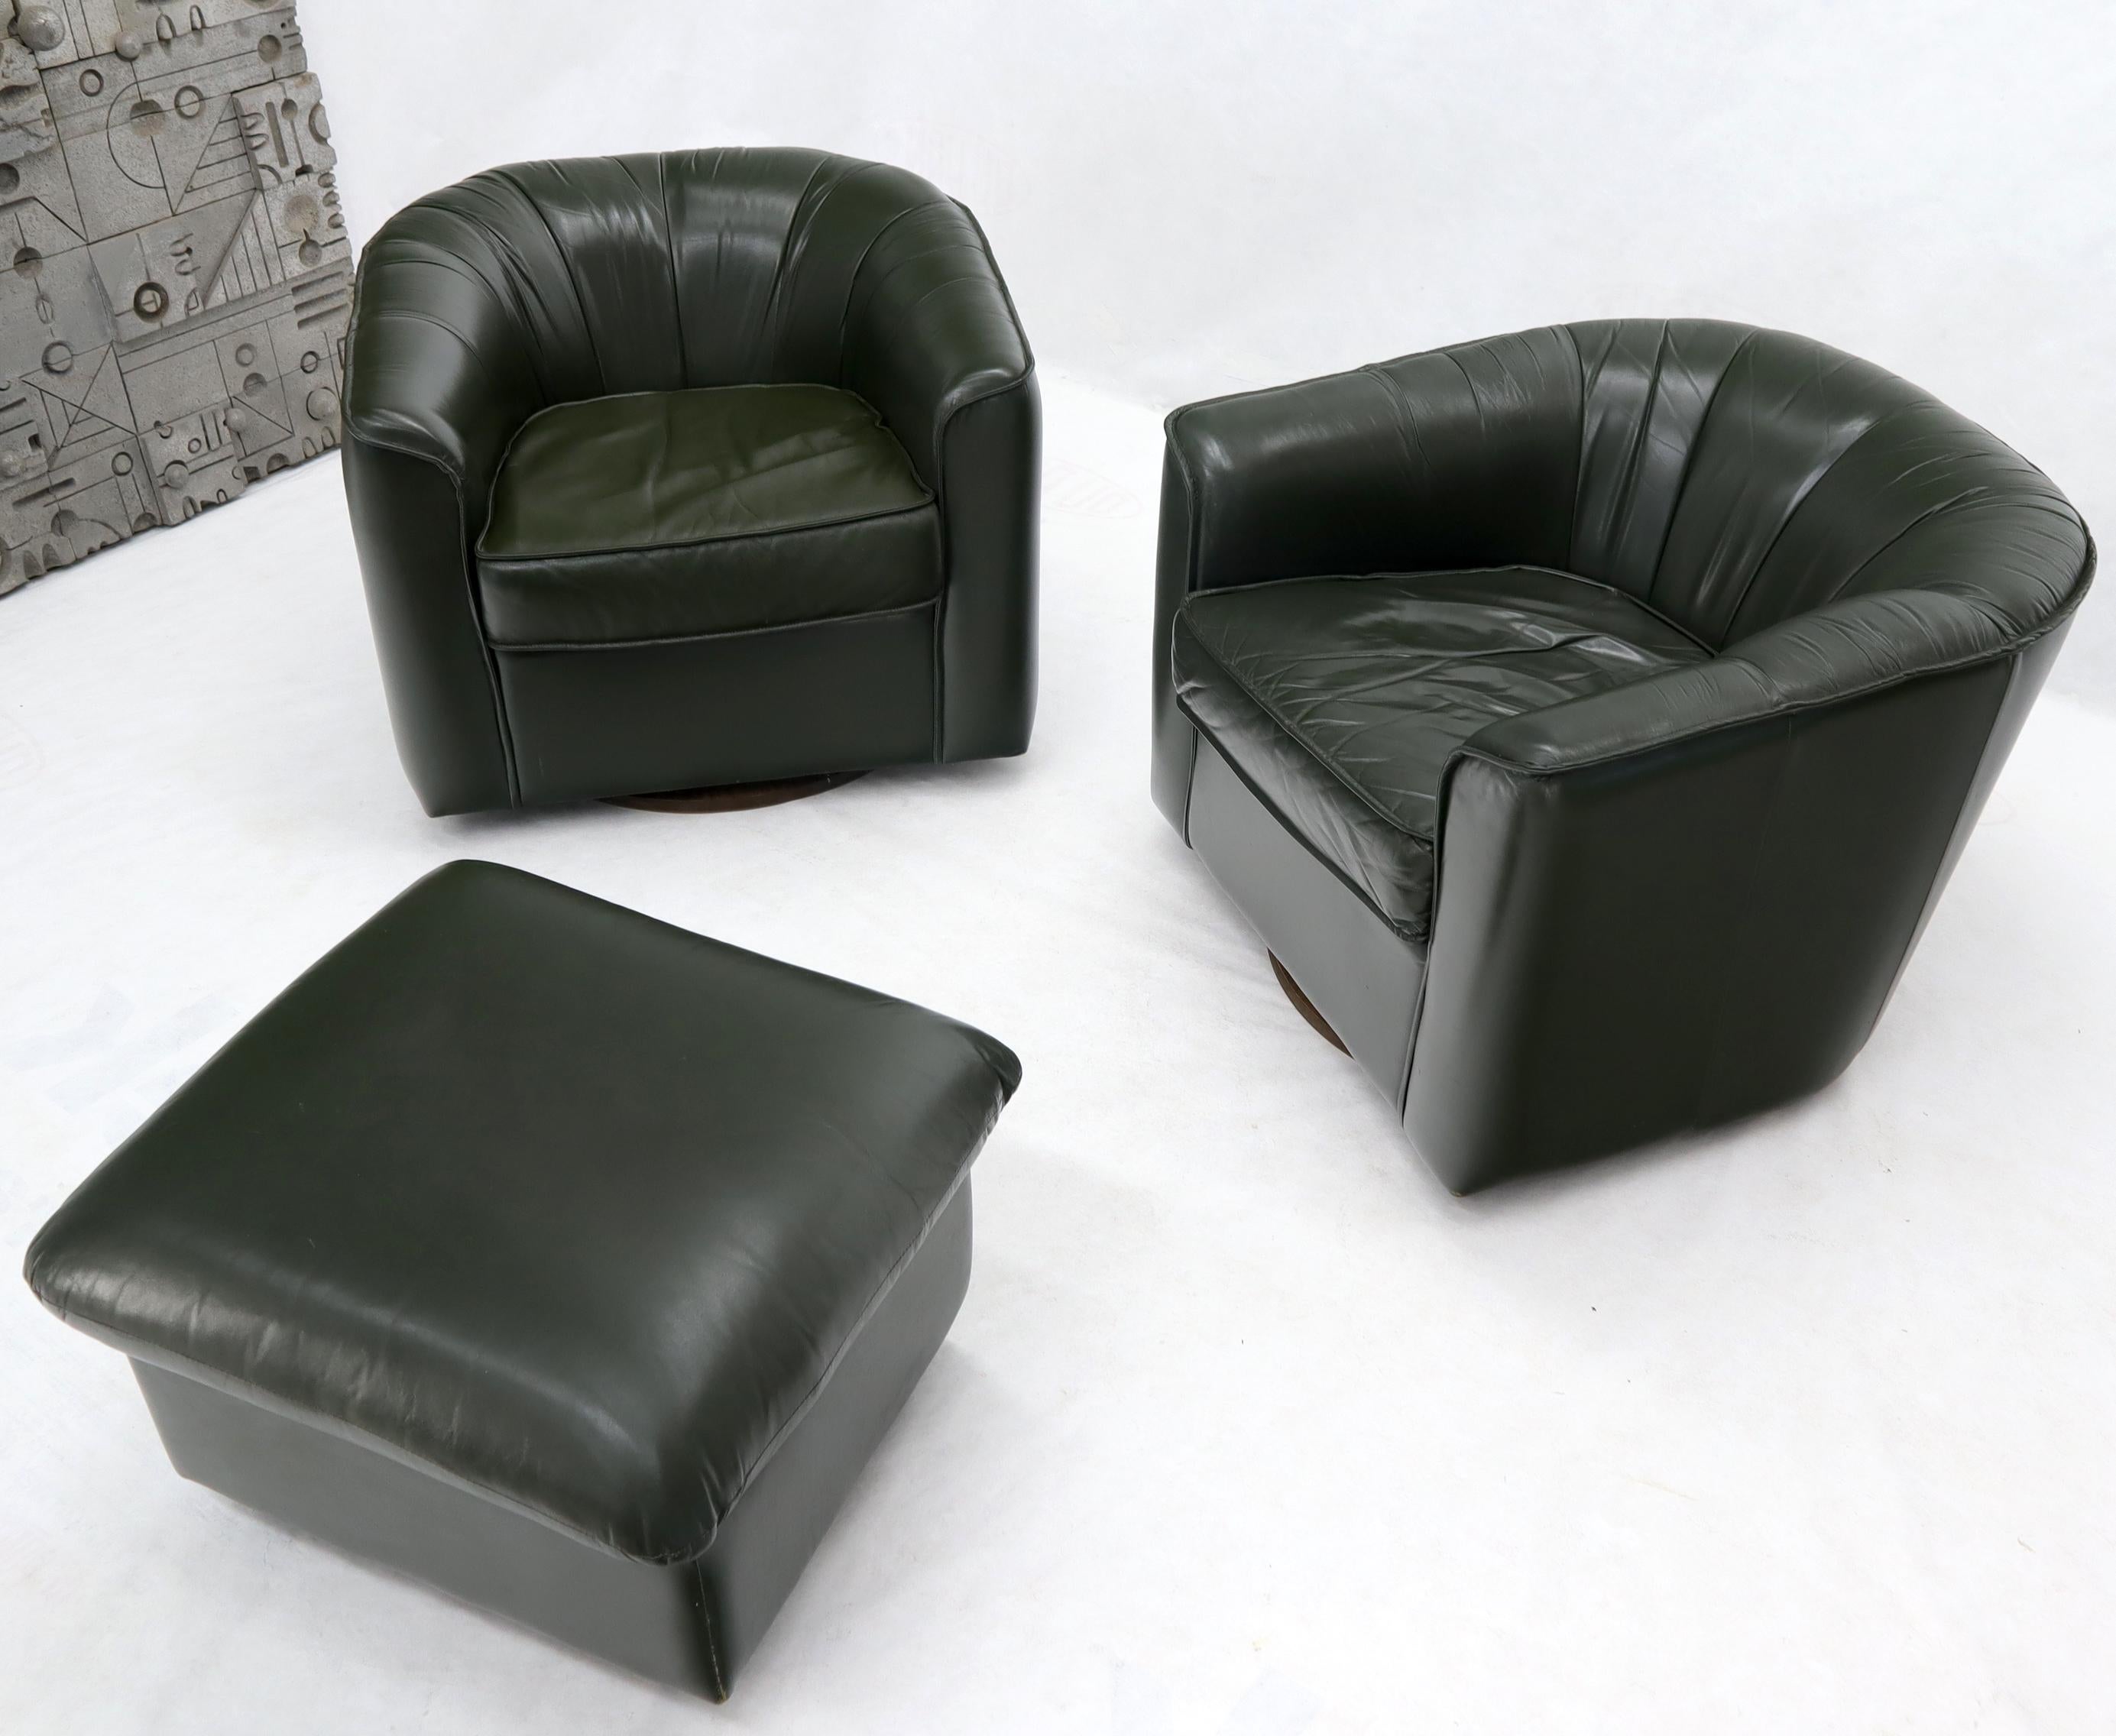 dark olive green chair